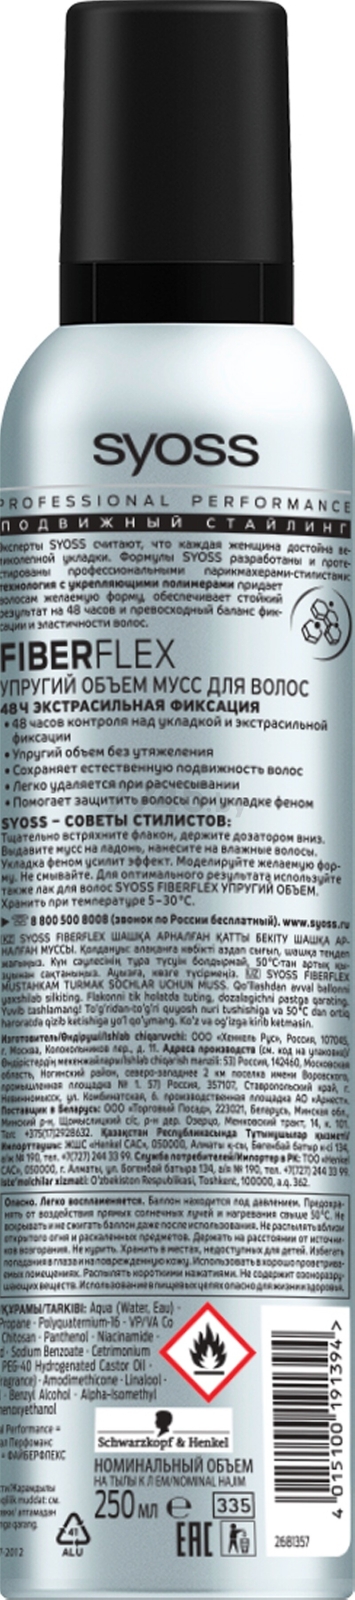 Мусс для волос SYOSS Fiber Flex Упругий объем 250 мл (4015100191387) - Фото 3